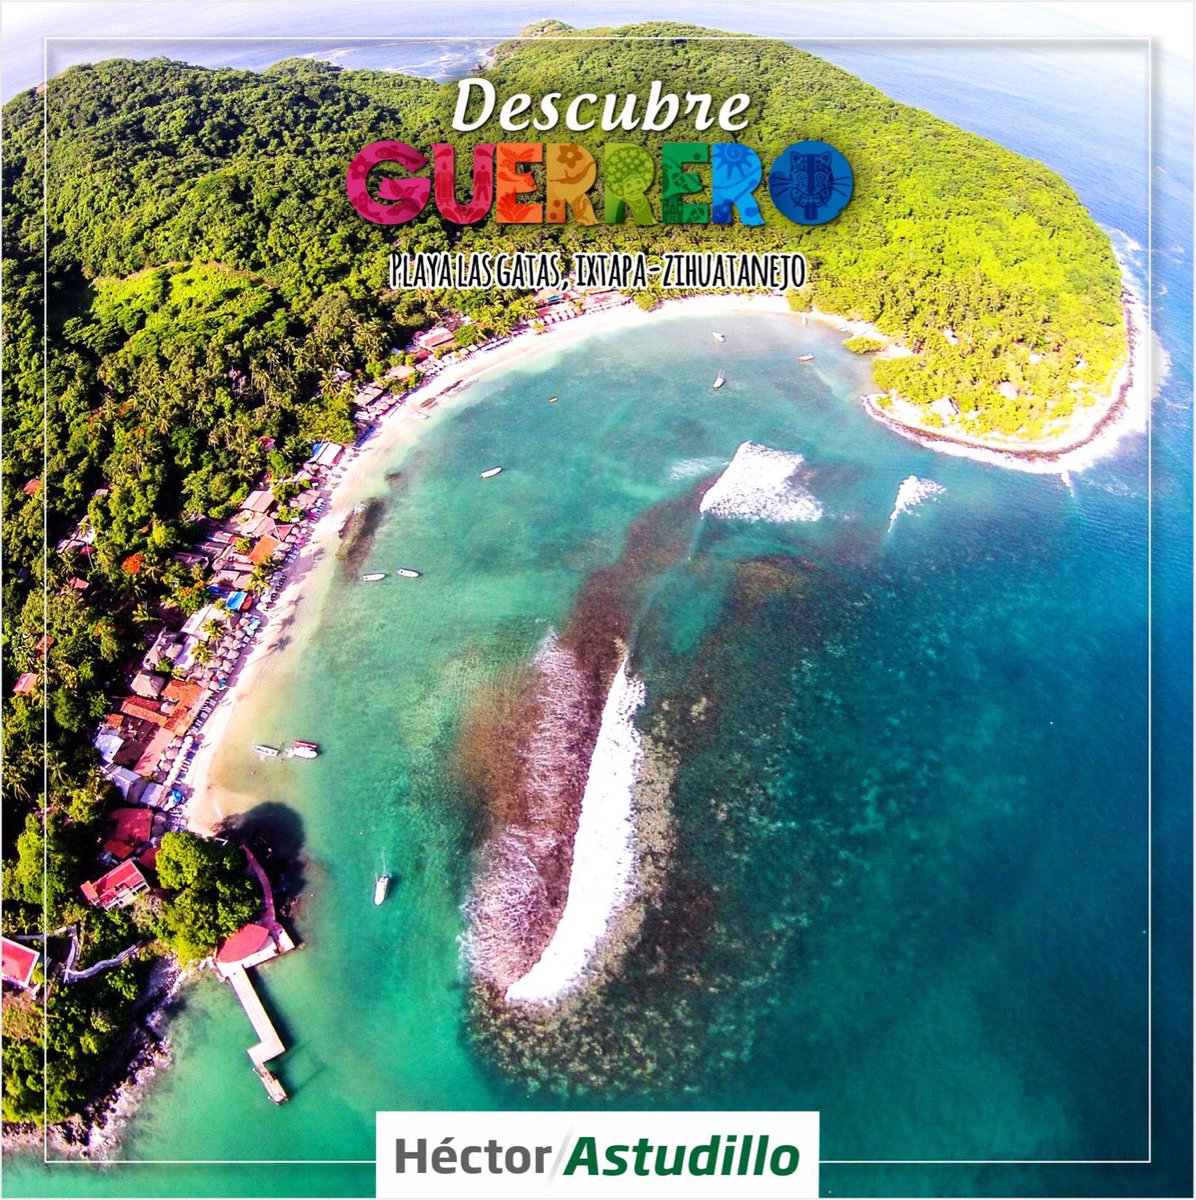 Twitter 上的 HectorAstudillo："#DescubreGuerrero y playa Las Gatas en Ixtapa- Zihuatanejo, una de sus mejores playas para vacacionar en #SemanaSanta2017.  https://t.co/iN90ED31se" / Twitter